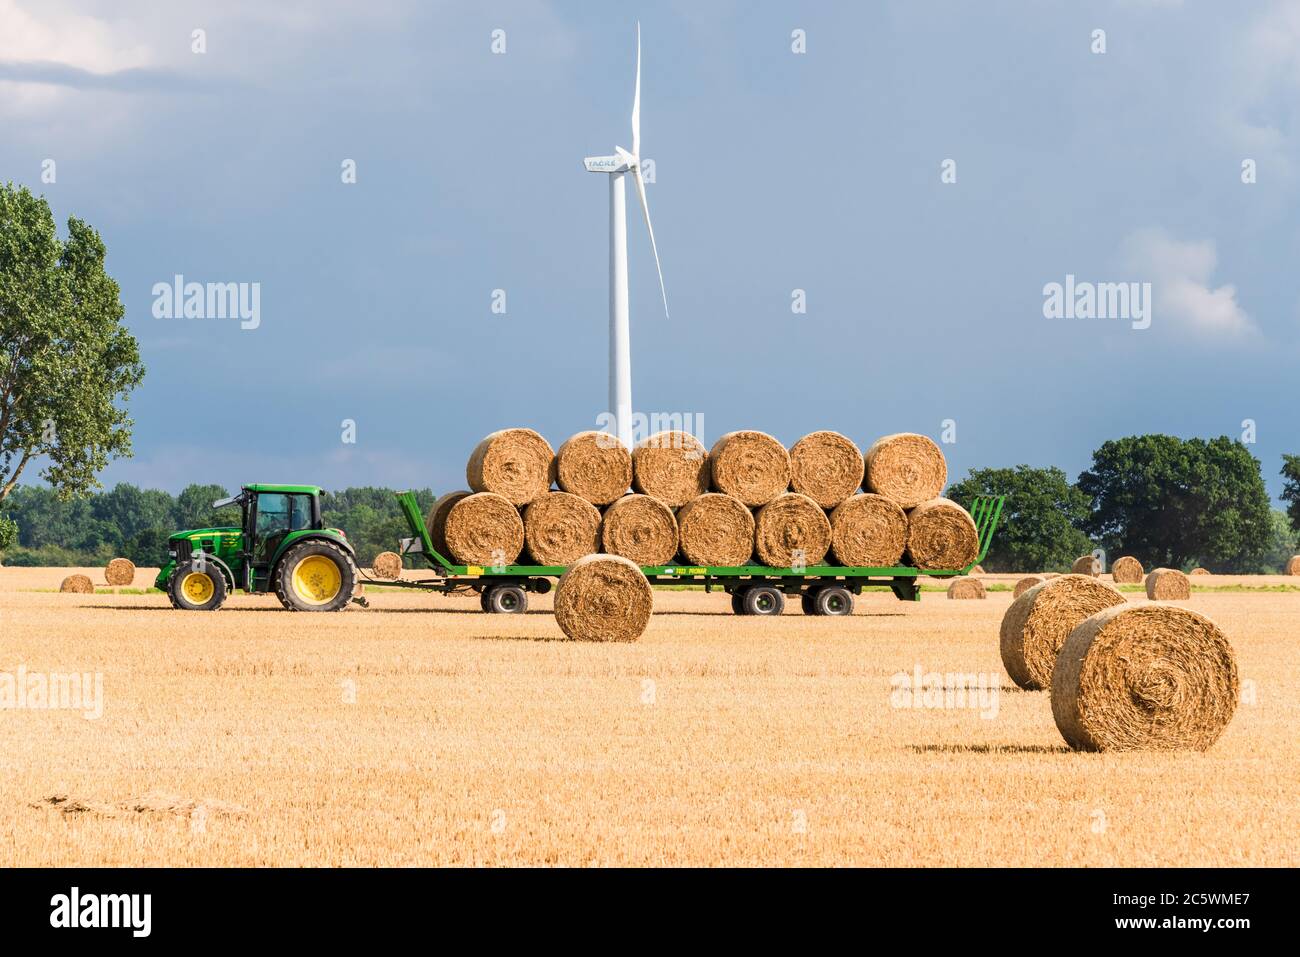 Windkraftanlagen auf einem Getreidefeld in Schleswig-Holstein während der Ernte in Herbst Stock Photo